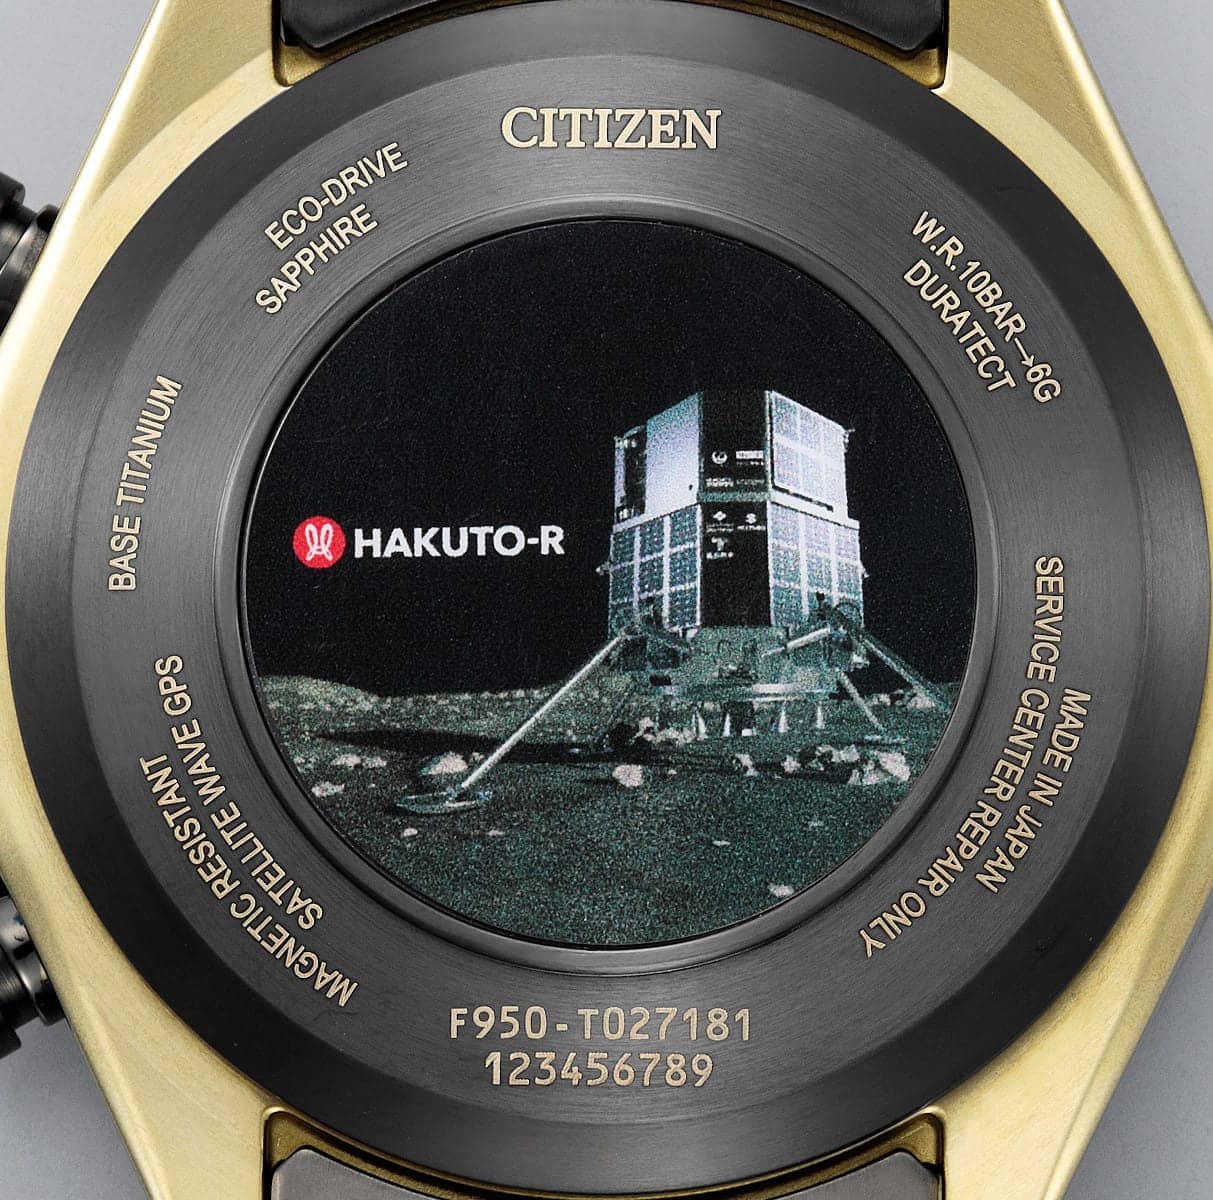 citizen hakuto-r CC4016-75E due